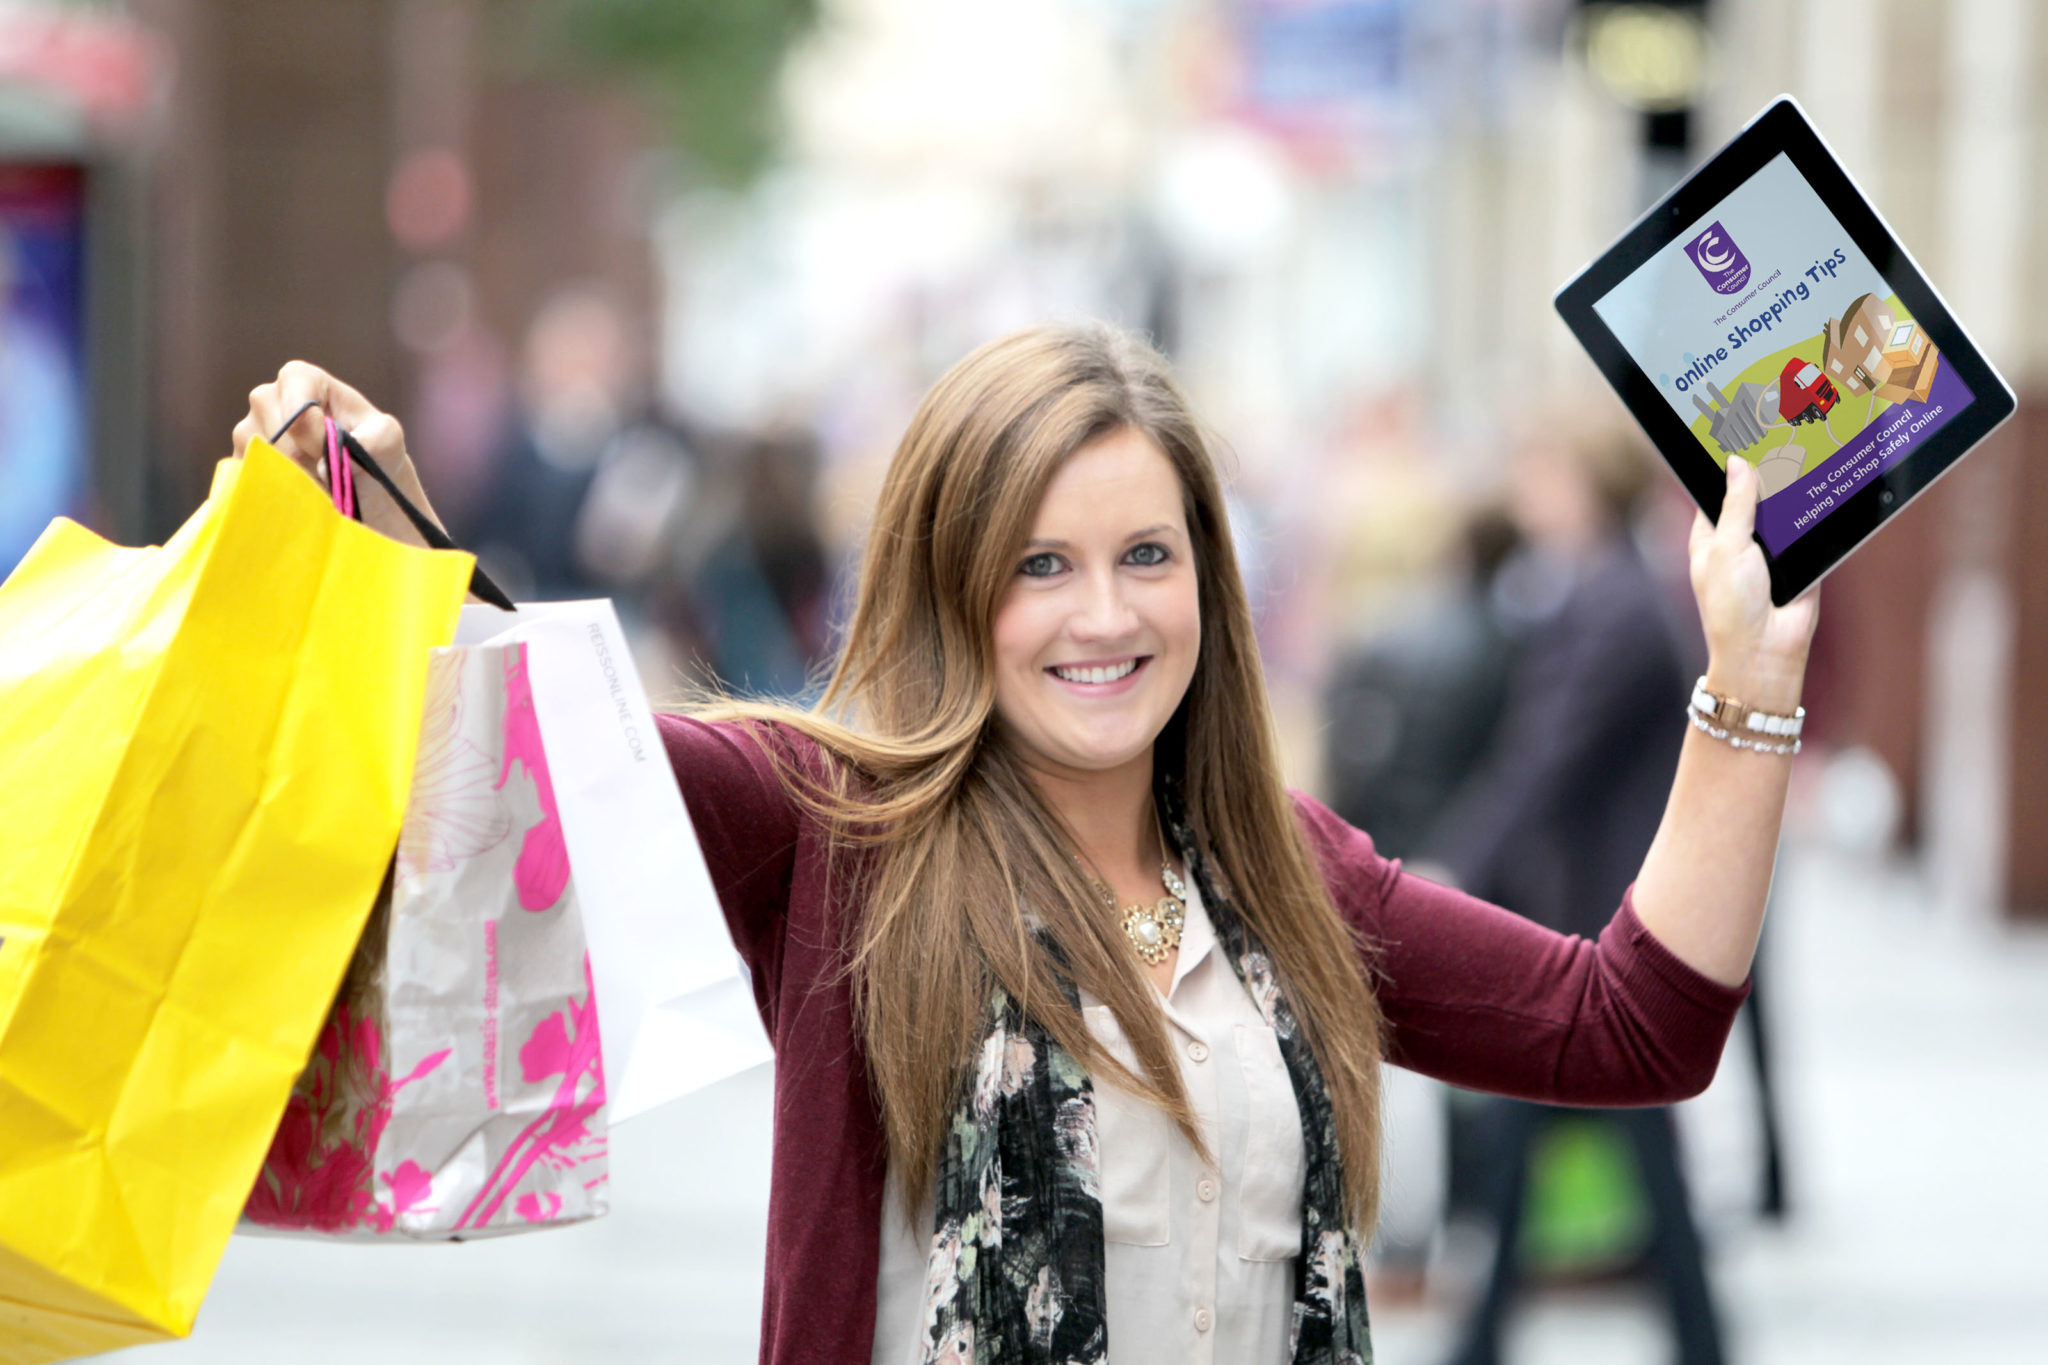 Online-Shopping-Apps-2015.jpg